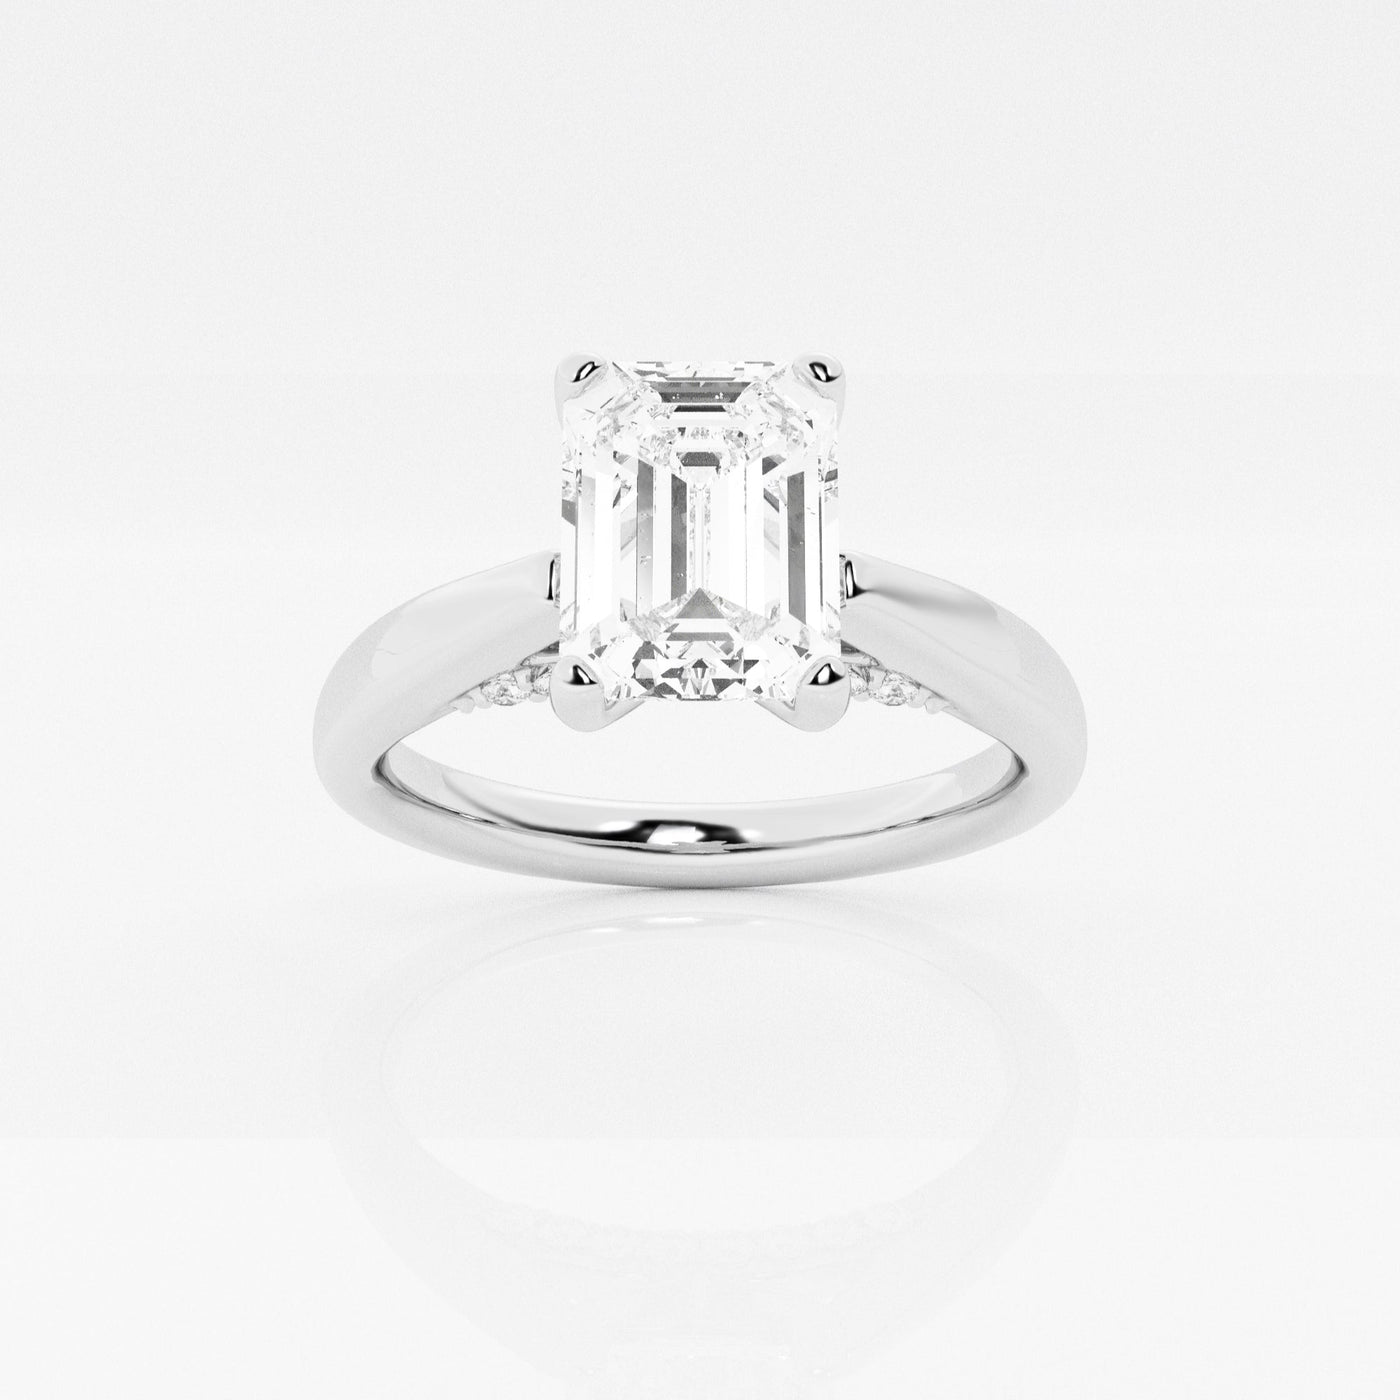 _main_image@SKU:LGR0647X2E100SOGW4~#carat_1.14#diamond-quality_fg,-vs2+#metal_18k-white-gold